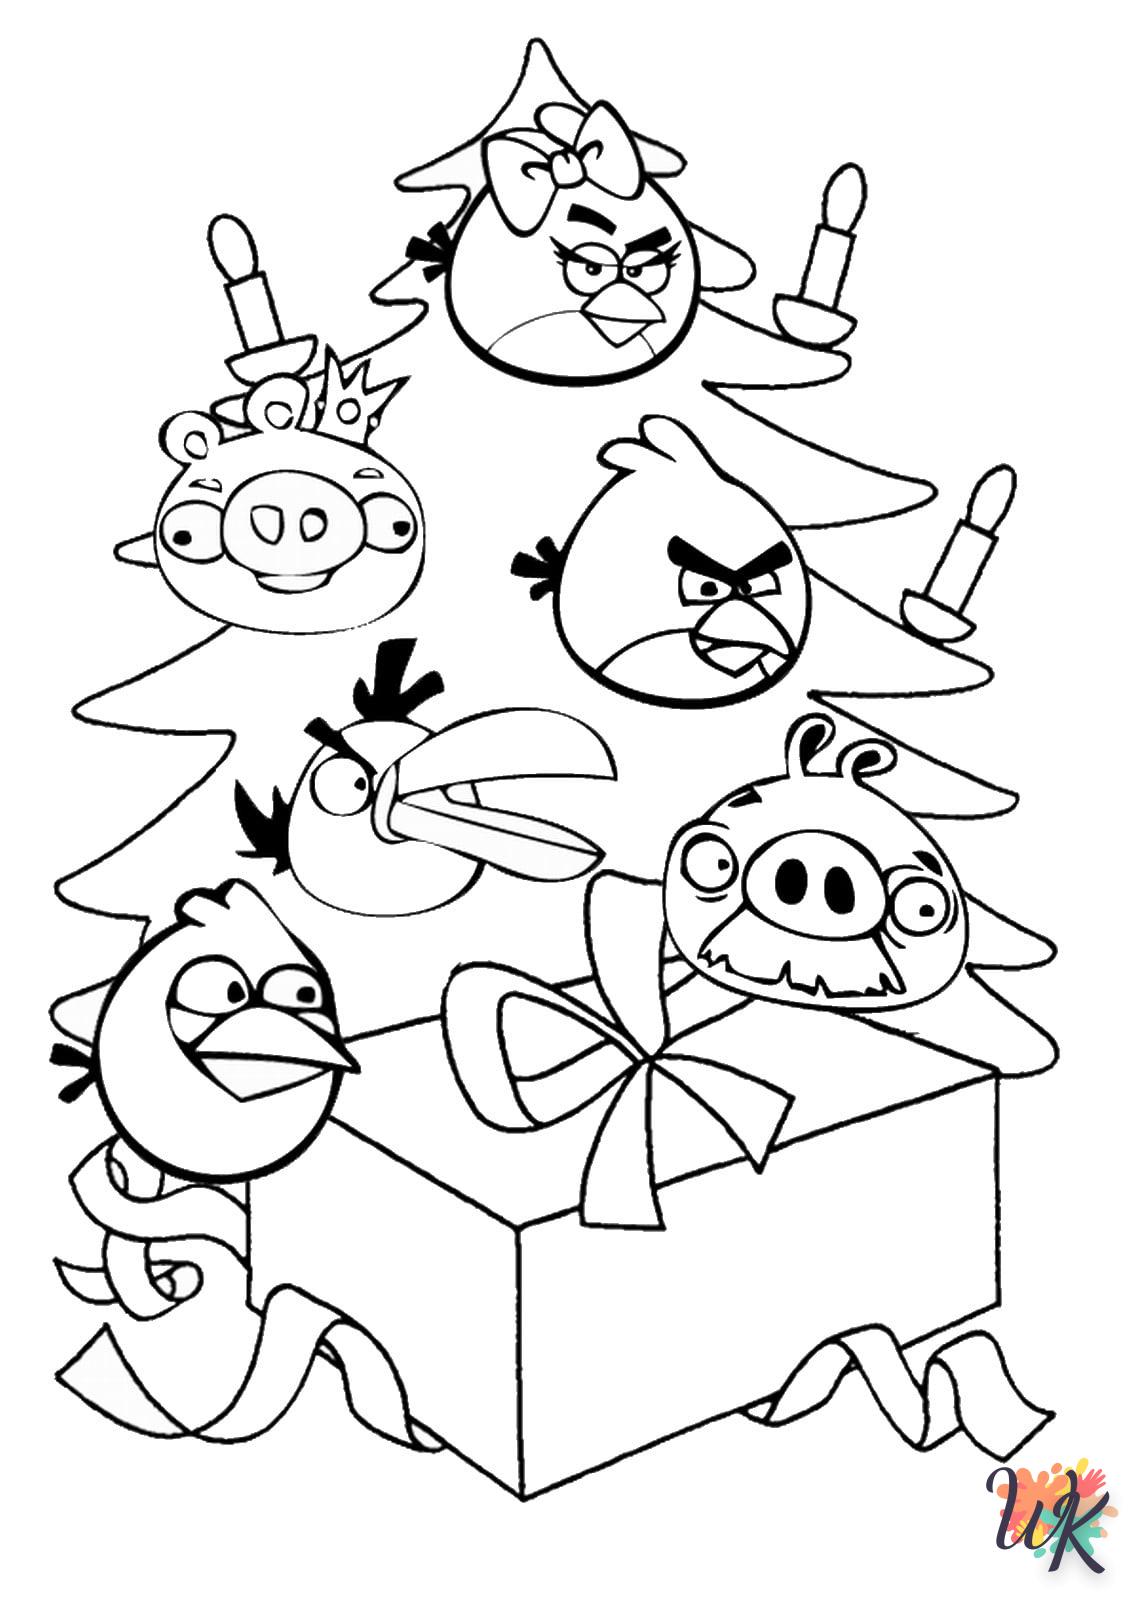 imprimer coloriage Angry Birds  pour enfant 1